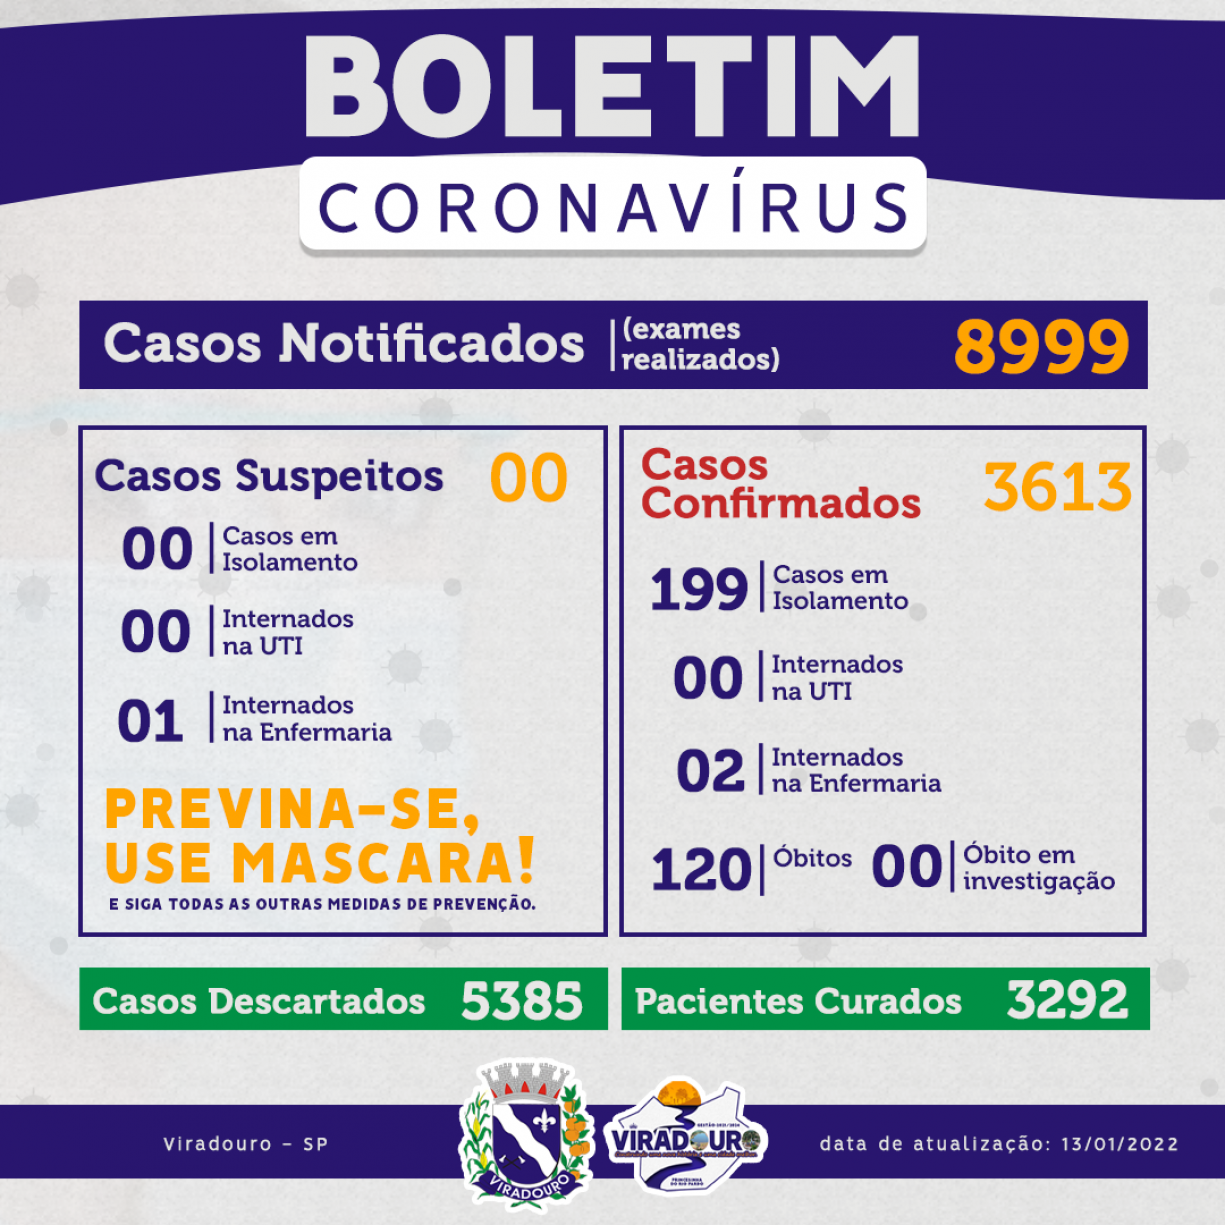 CORONAVÍRUS: BOLETIM EPIDEMIOLÓGICO (ATUALIZAÇÃO 13/01/2022)